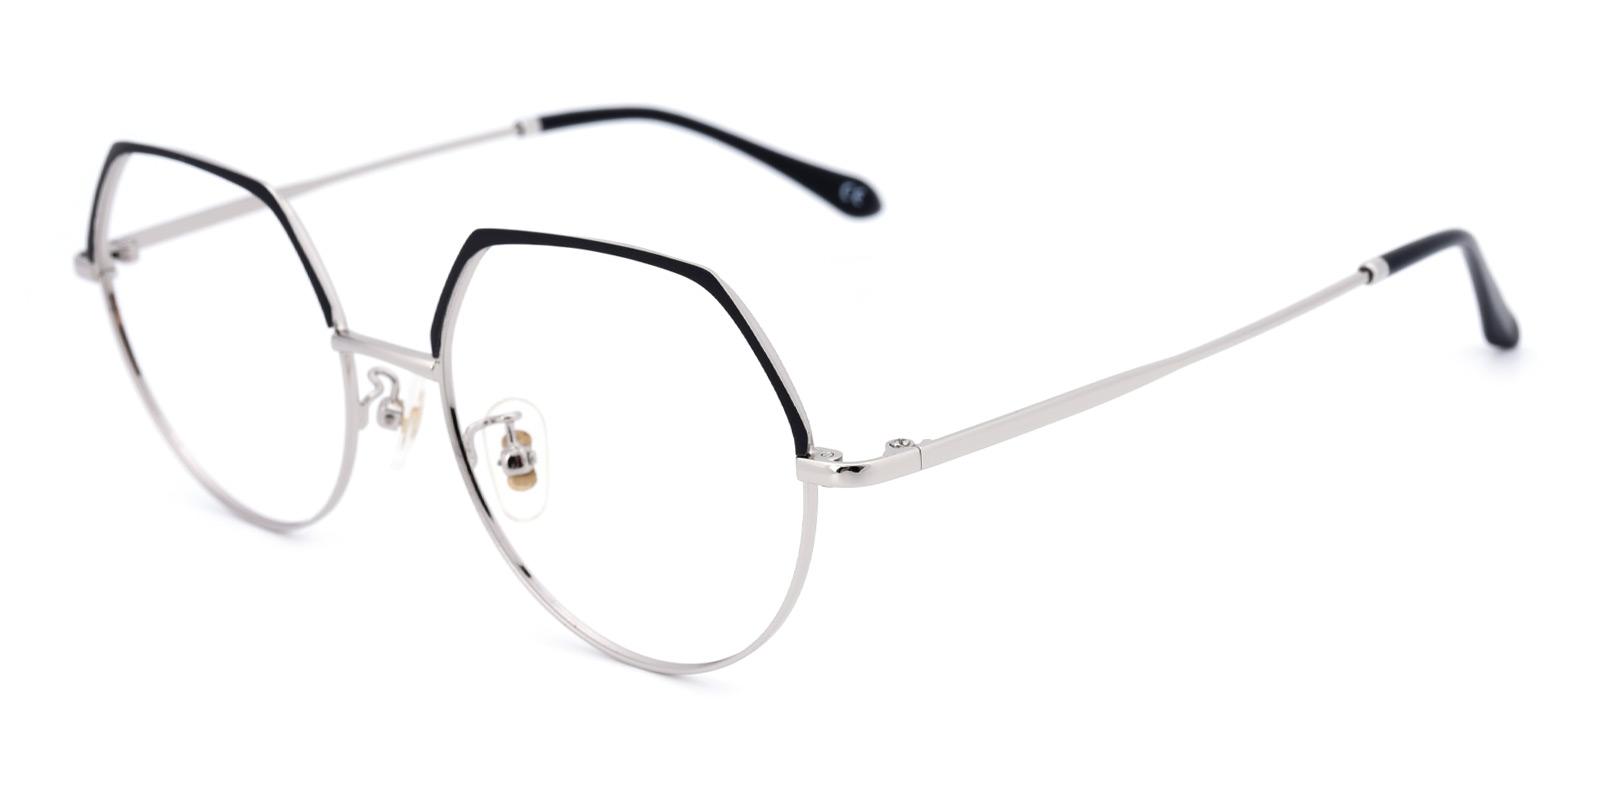 Nebula-Silver-Round-Metal-Eyeglasses-detail